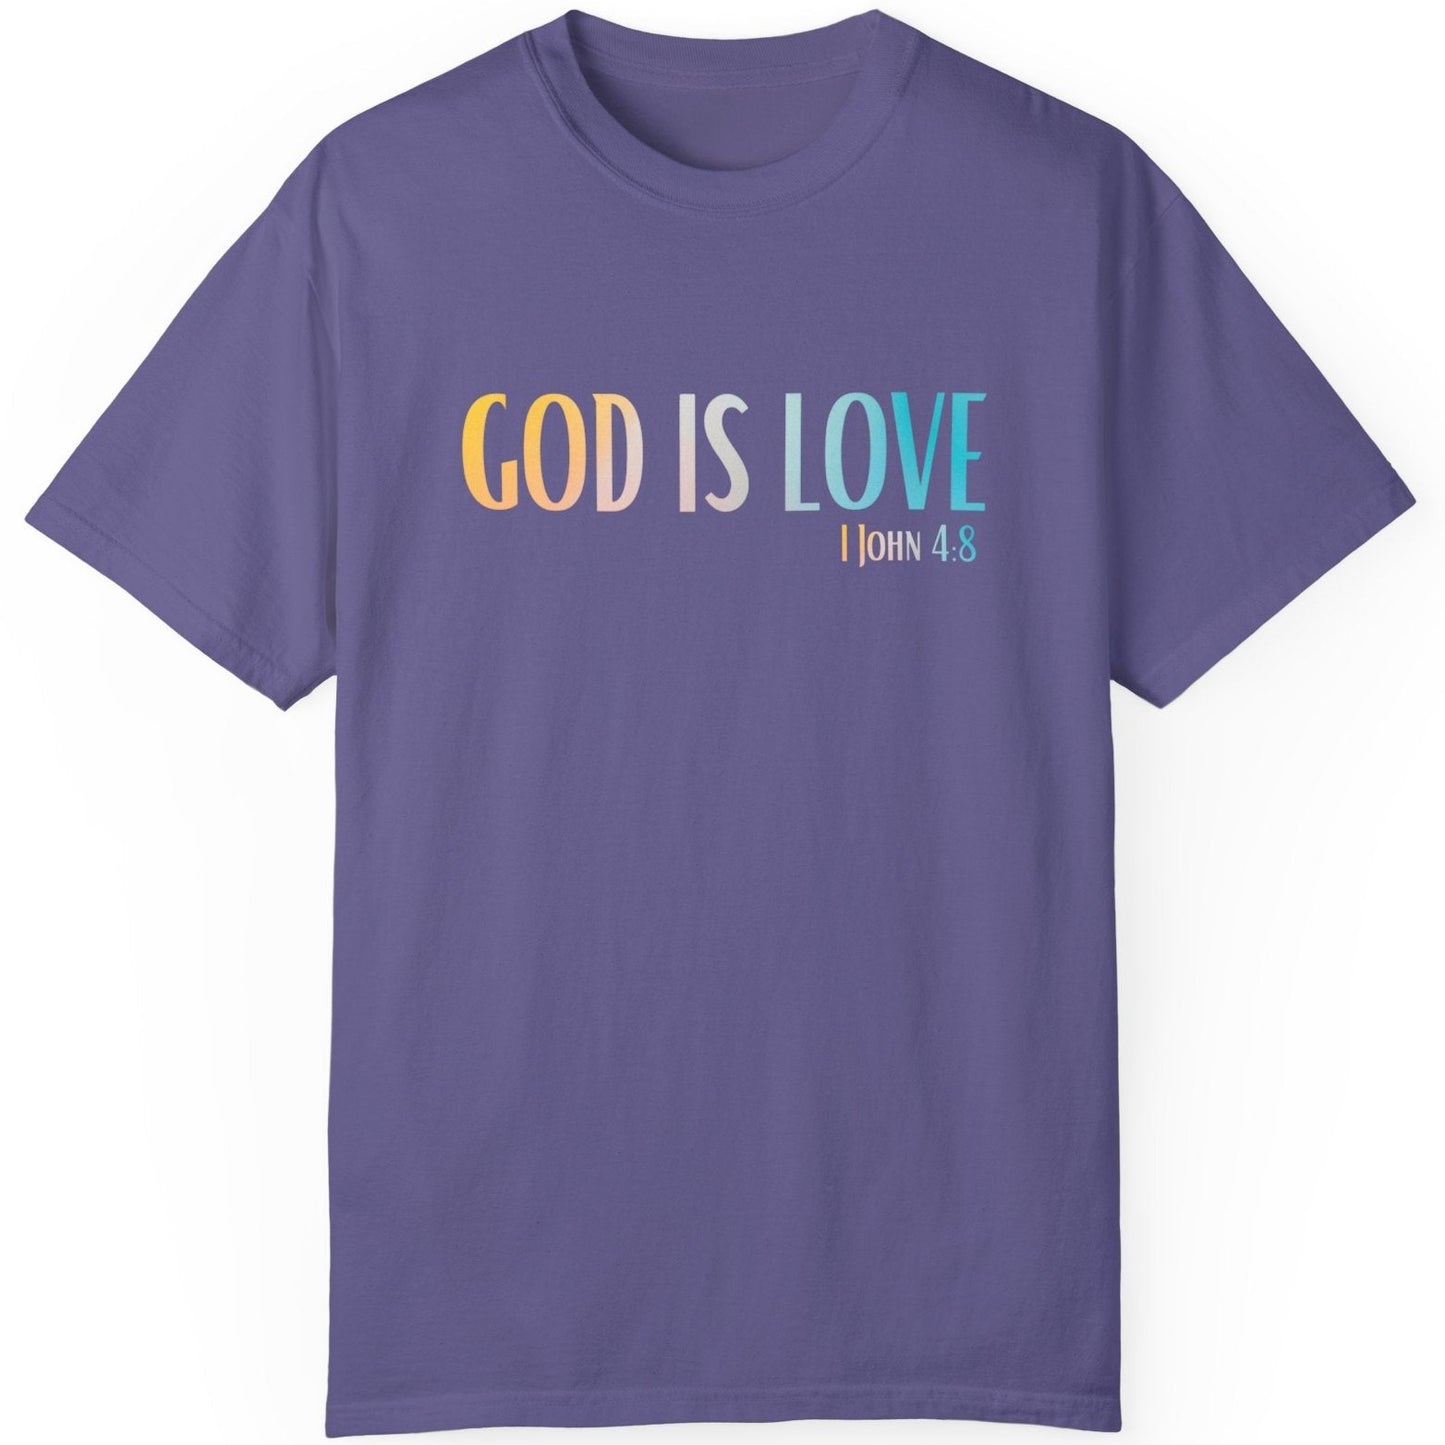 1 John 4:8 God is Love, Christian Garment-Dyed T-shirt for men and women grape purple